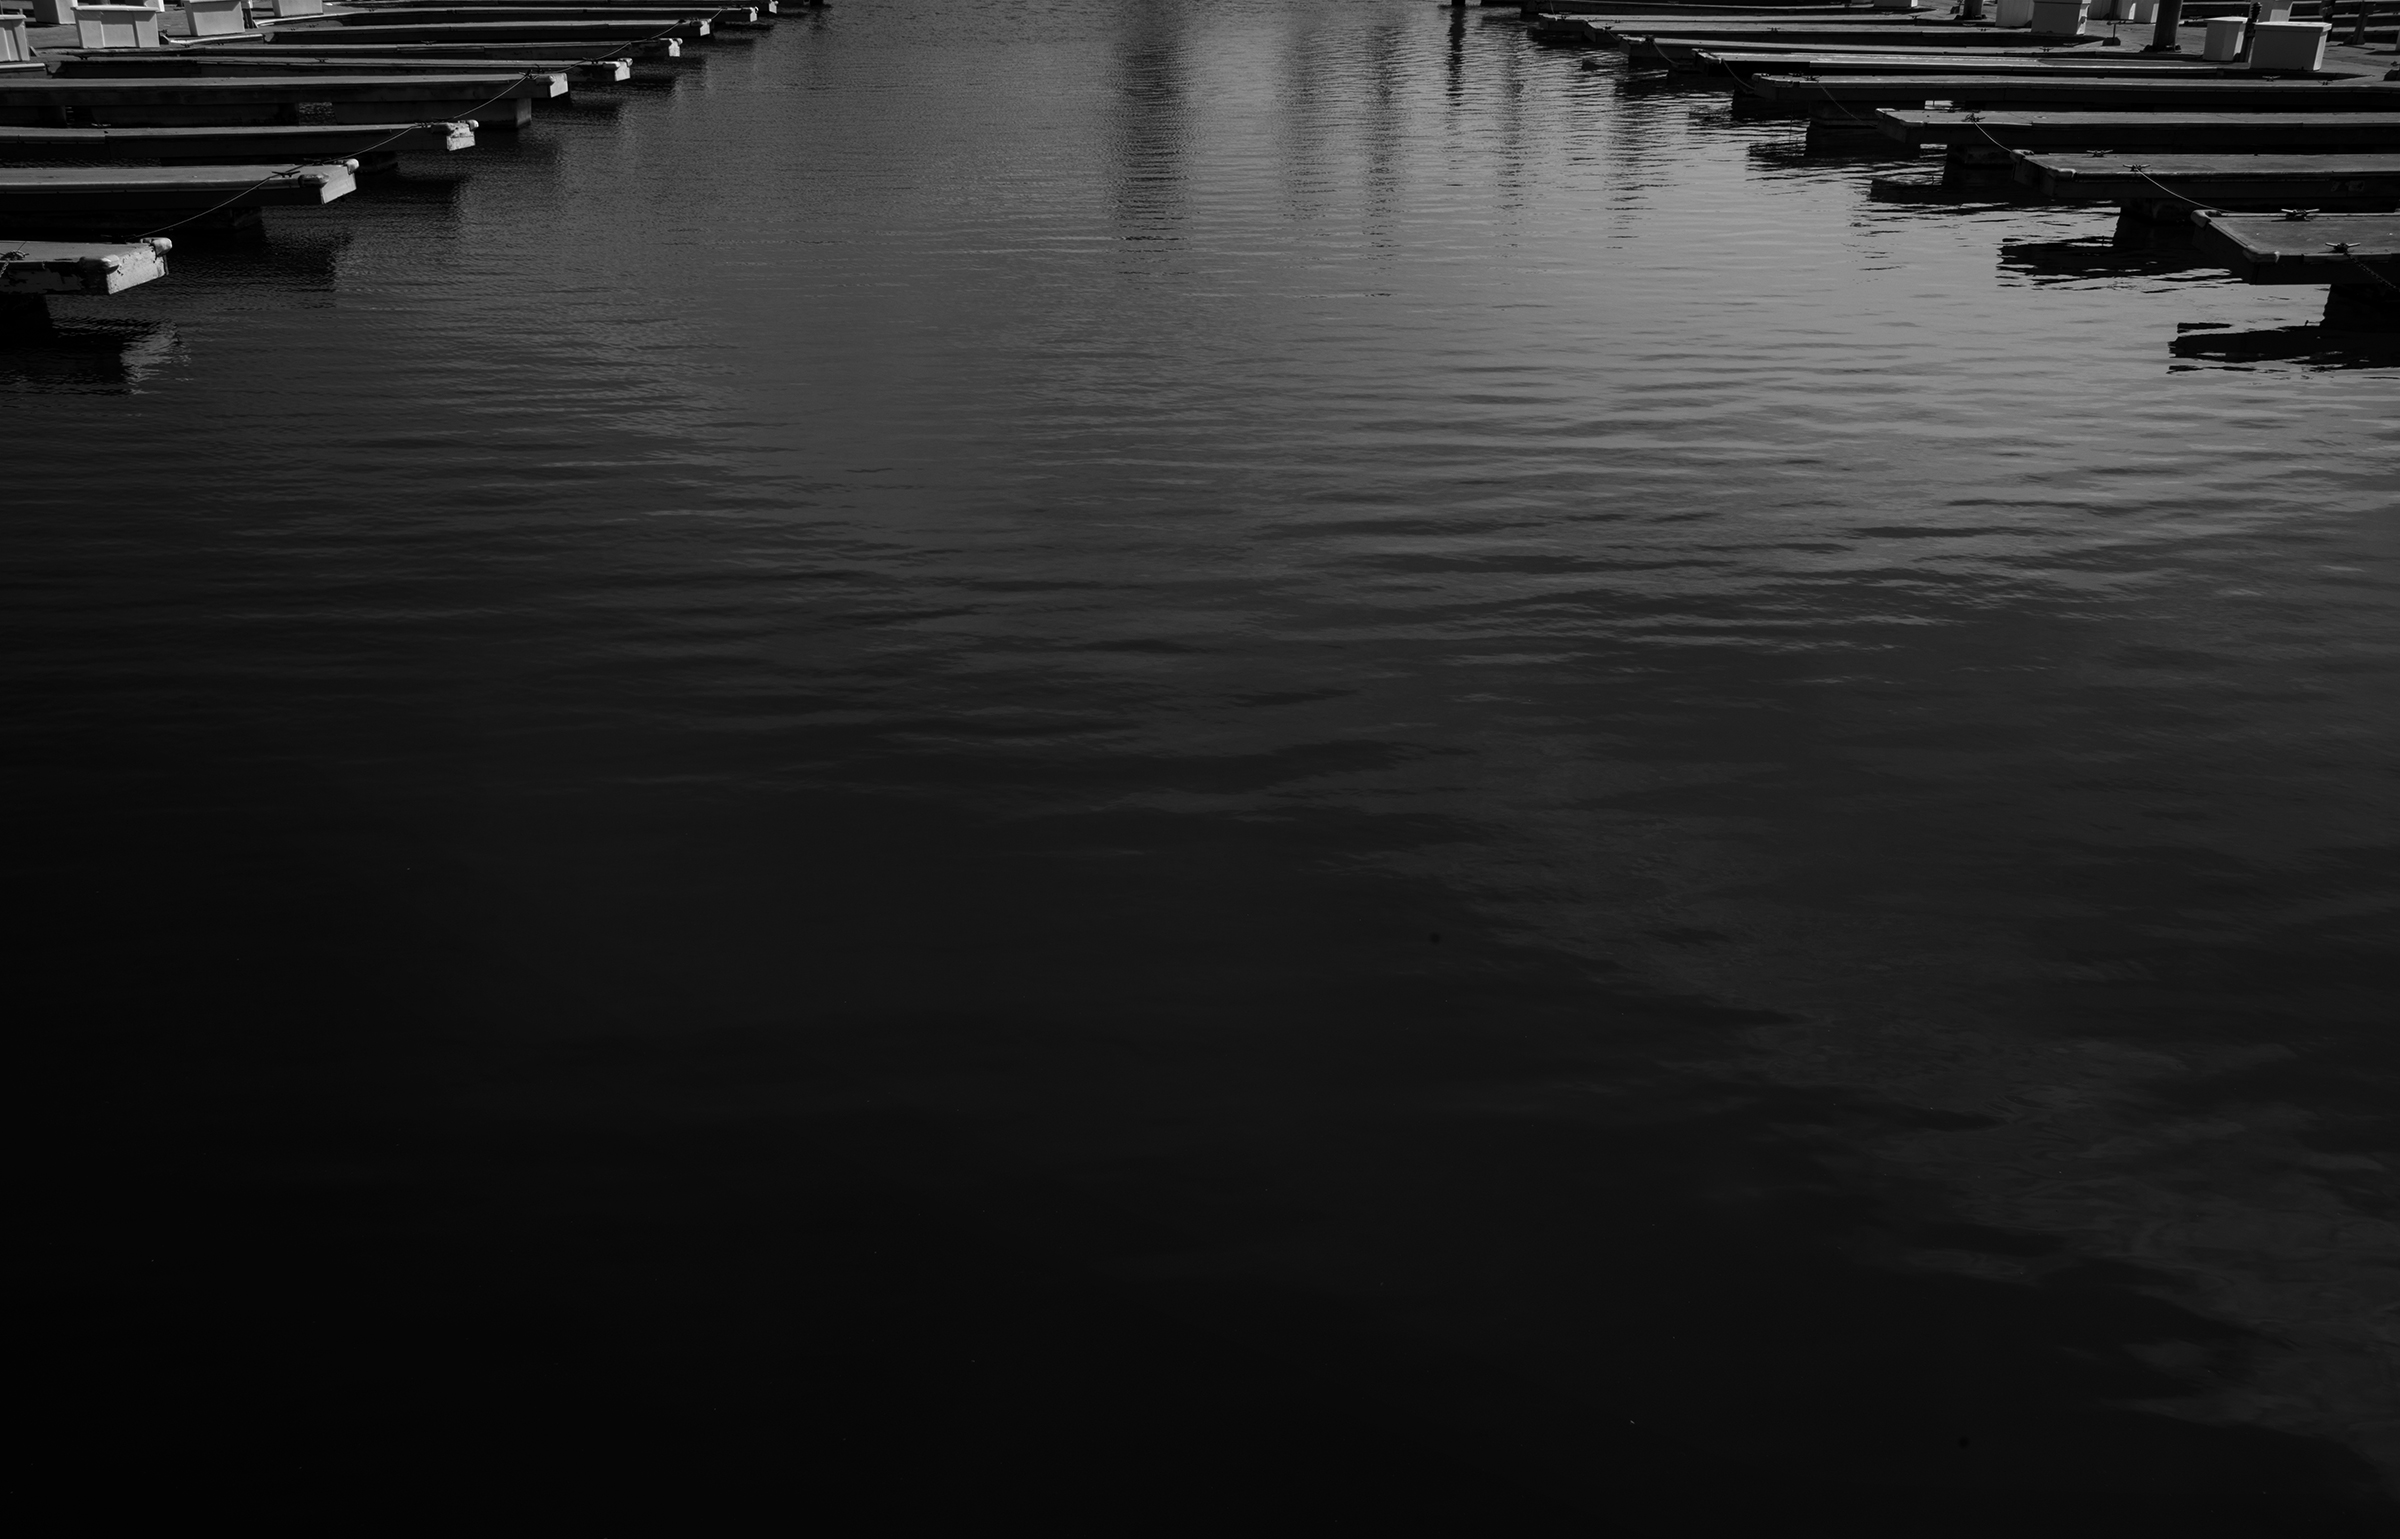 docks_BW.jpg